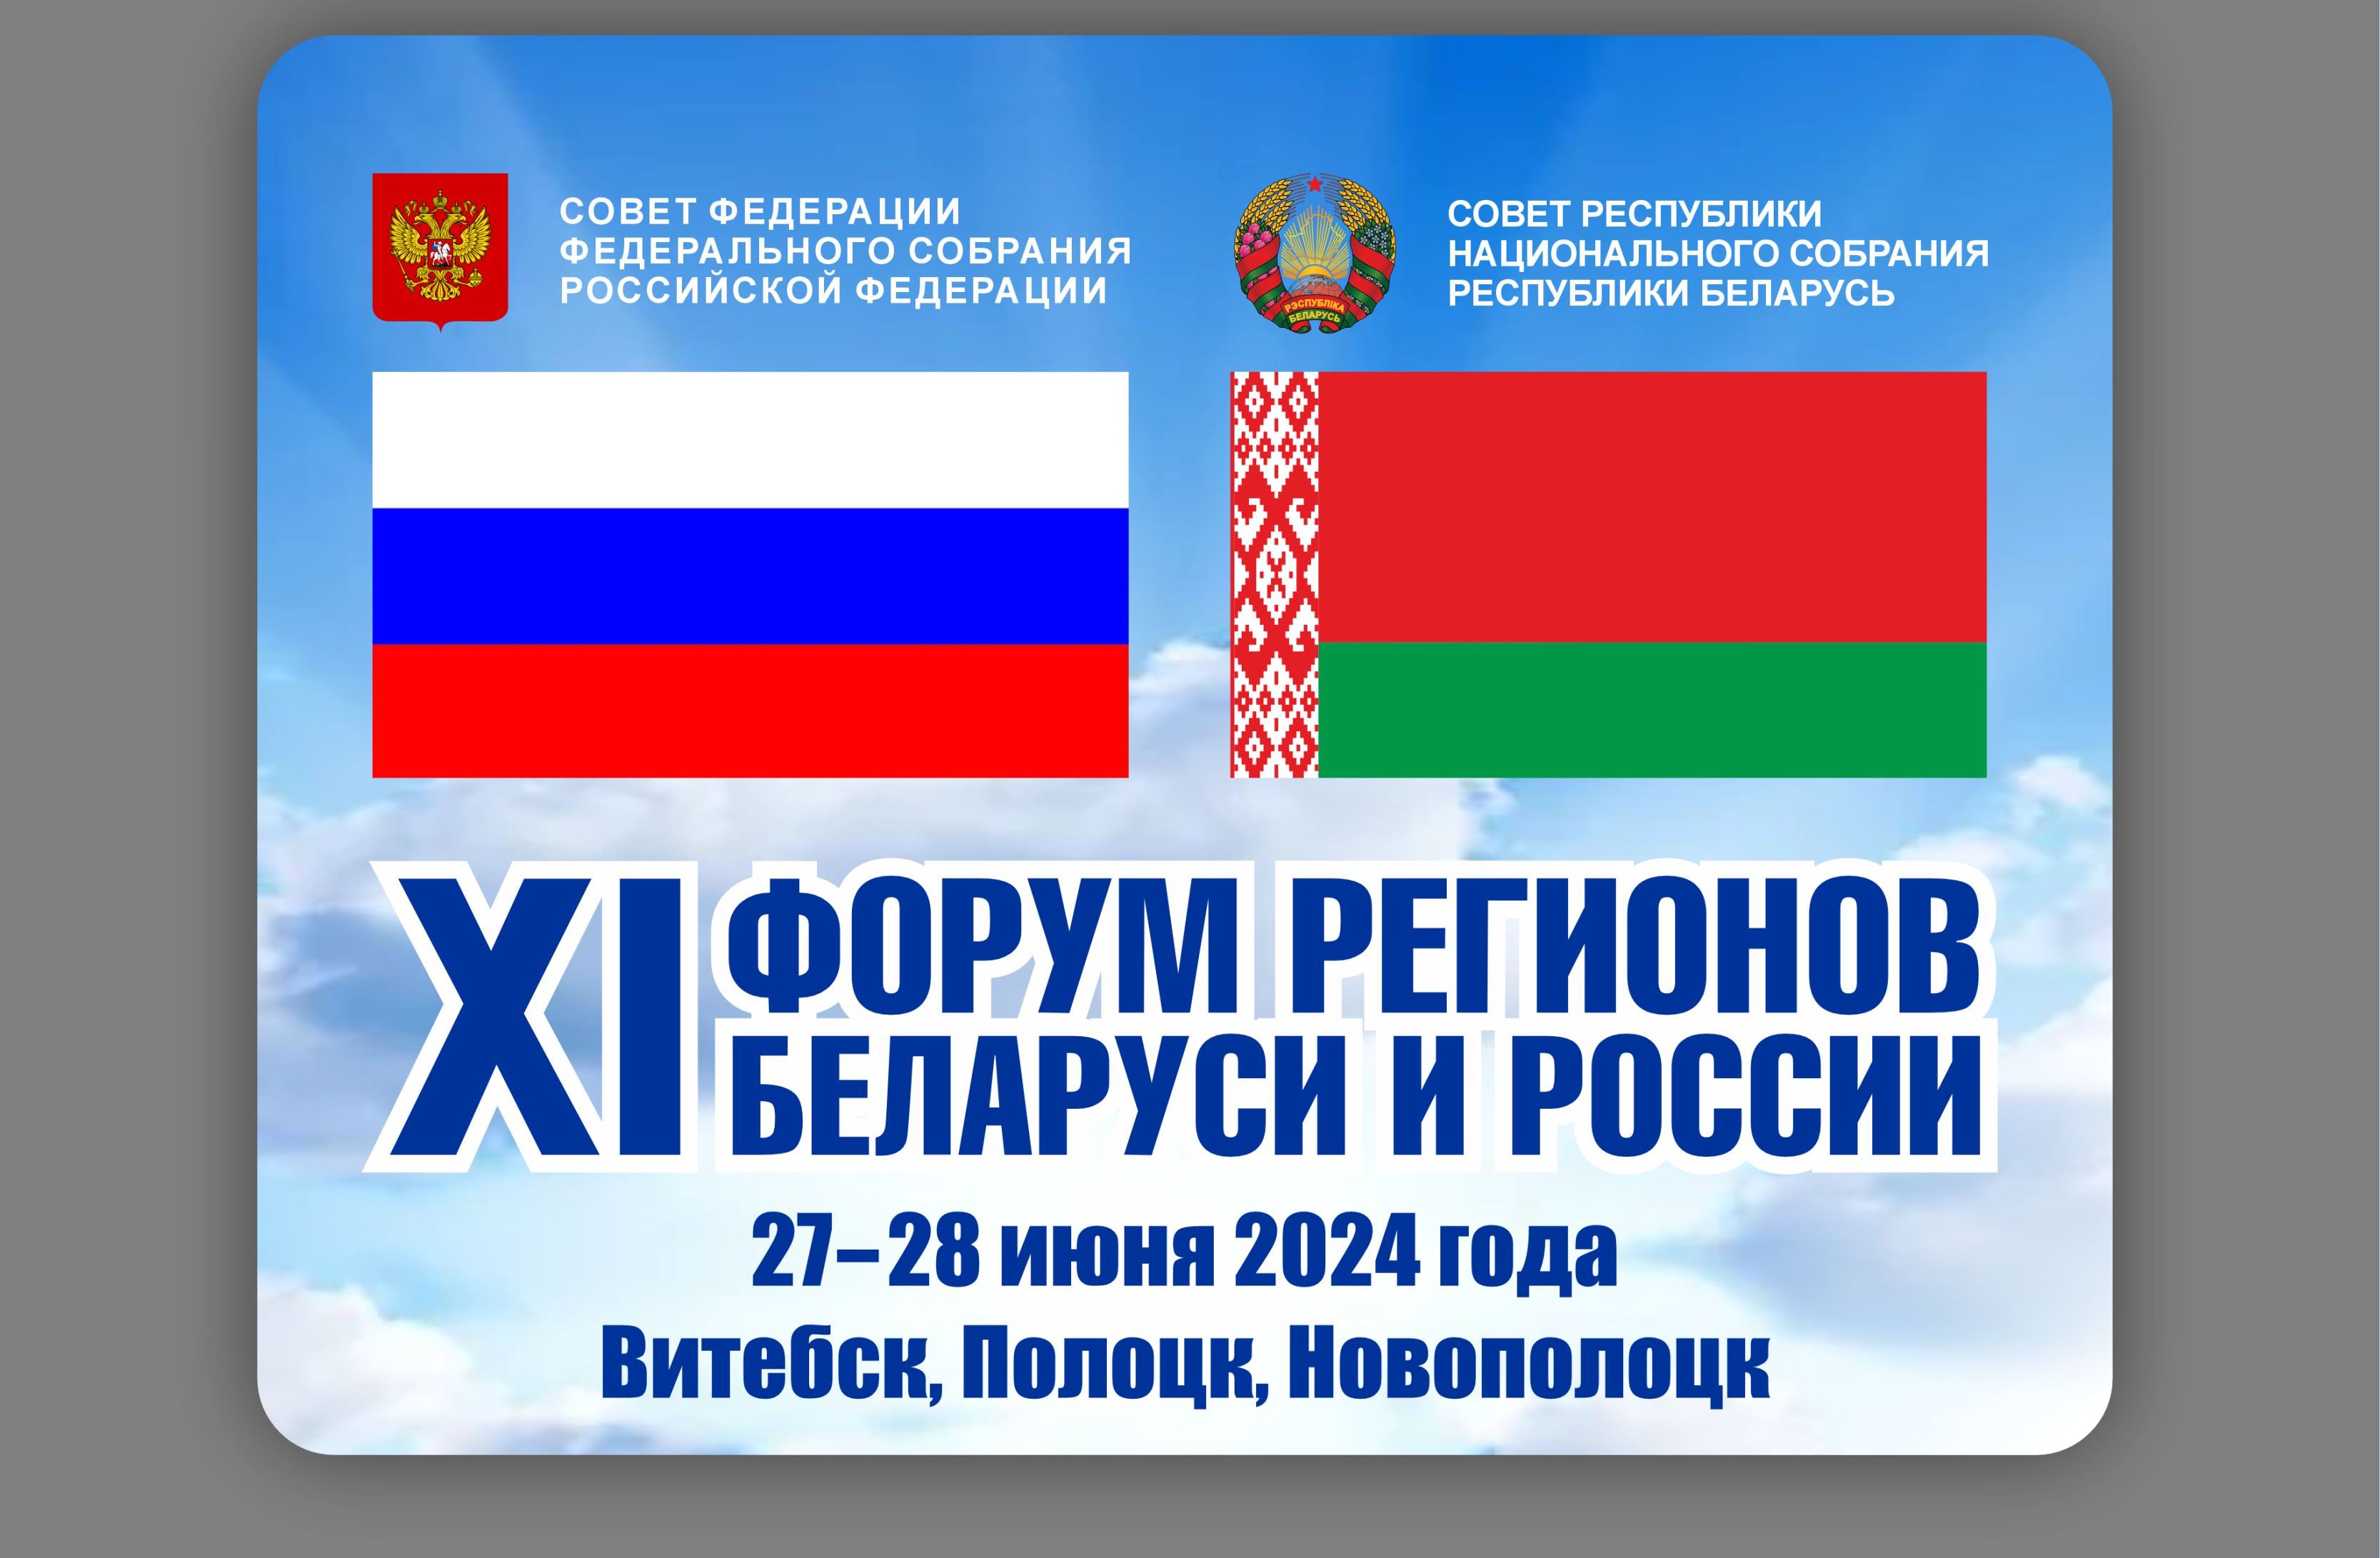 27-28 июня XI Форум регионов Беларуси и России примут сразу три города Витебской области: Витебск, Полоцк и Новополоцк.